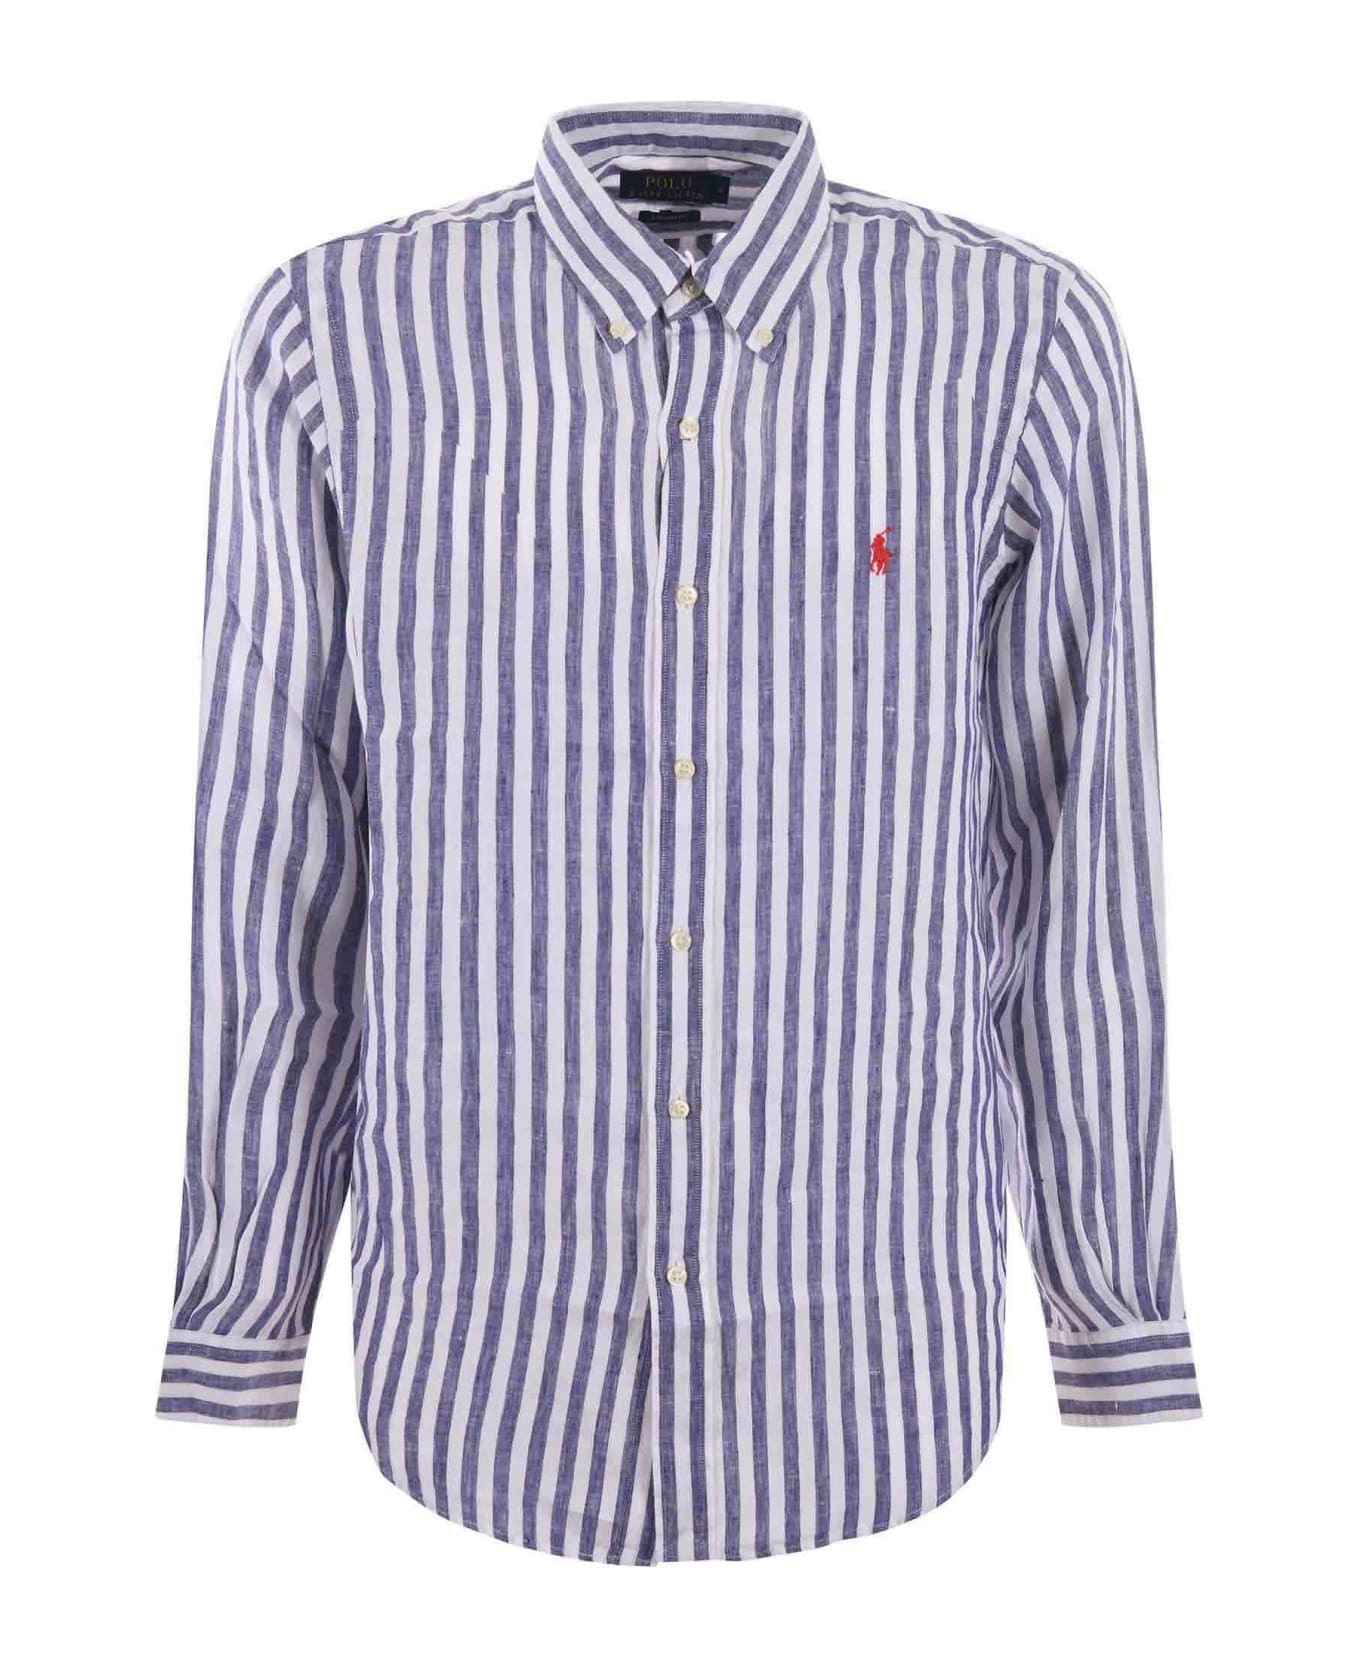 Polo Ralph Lauren Shirt - Bianco/blu